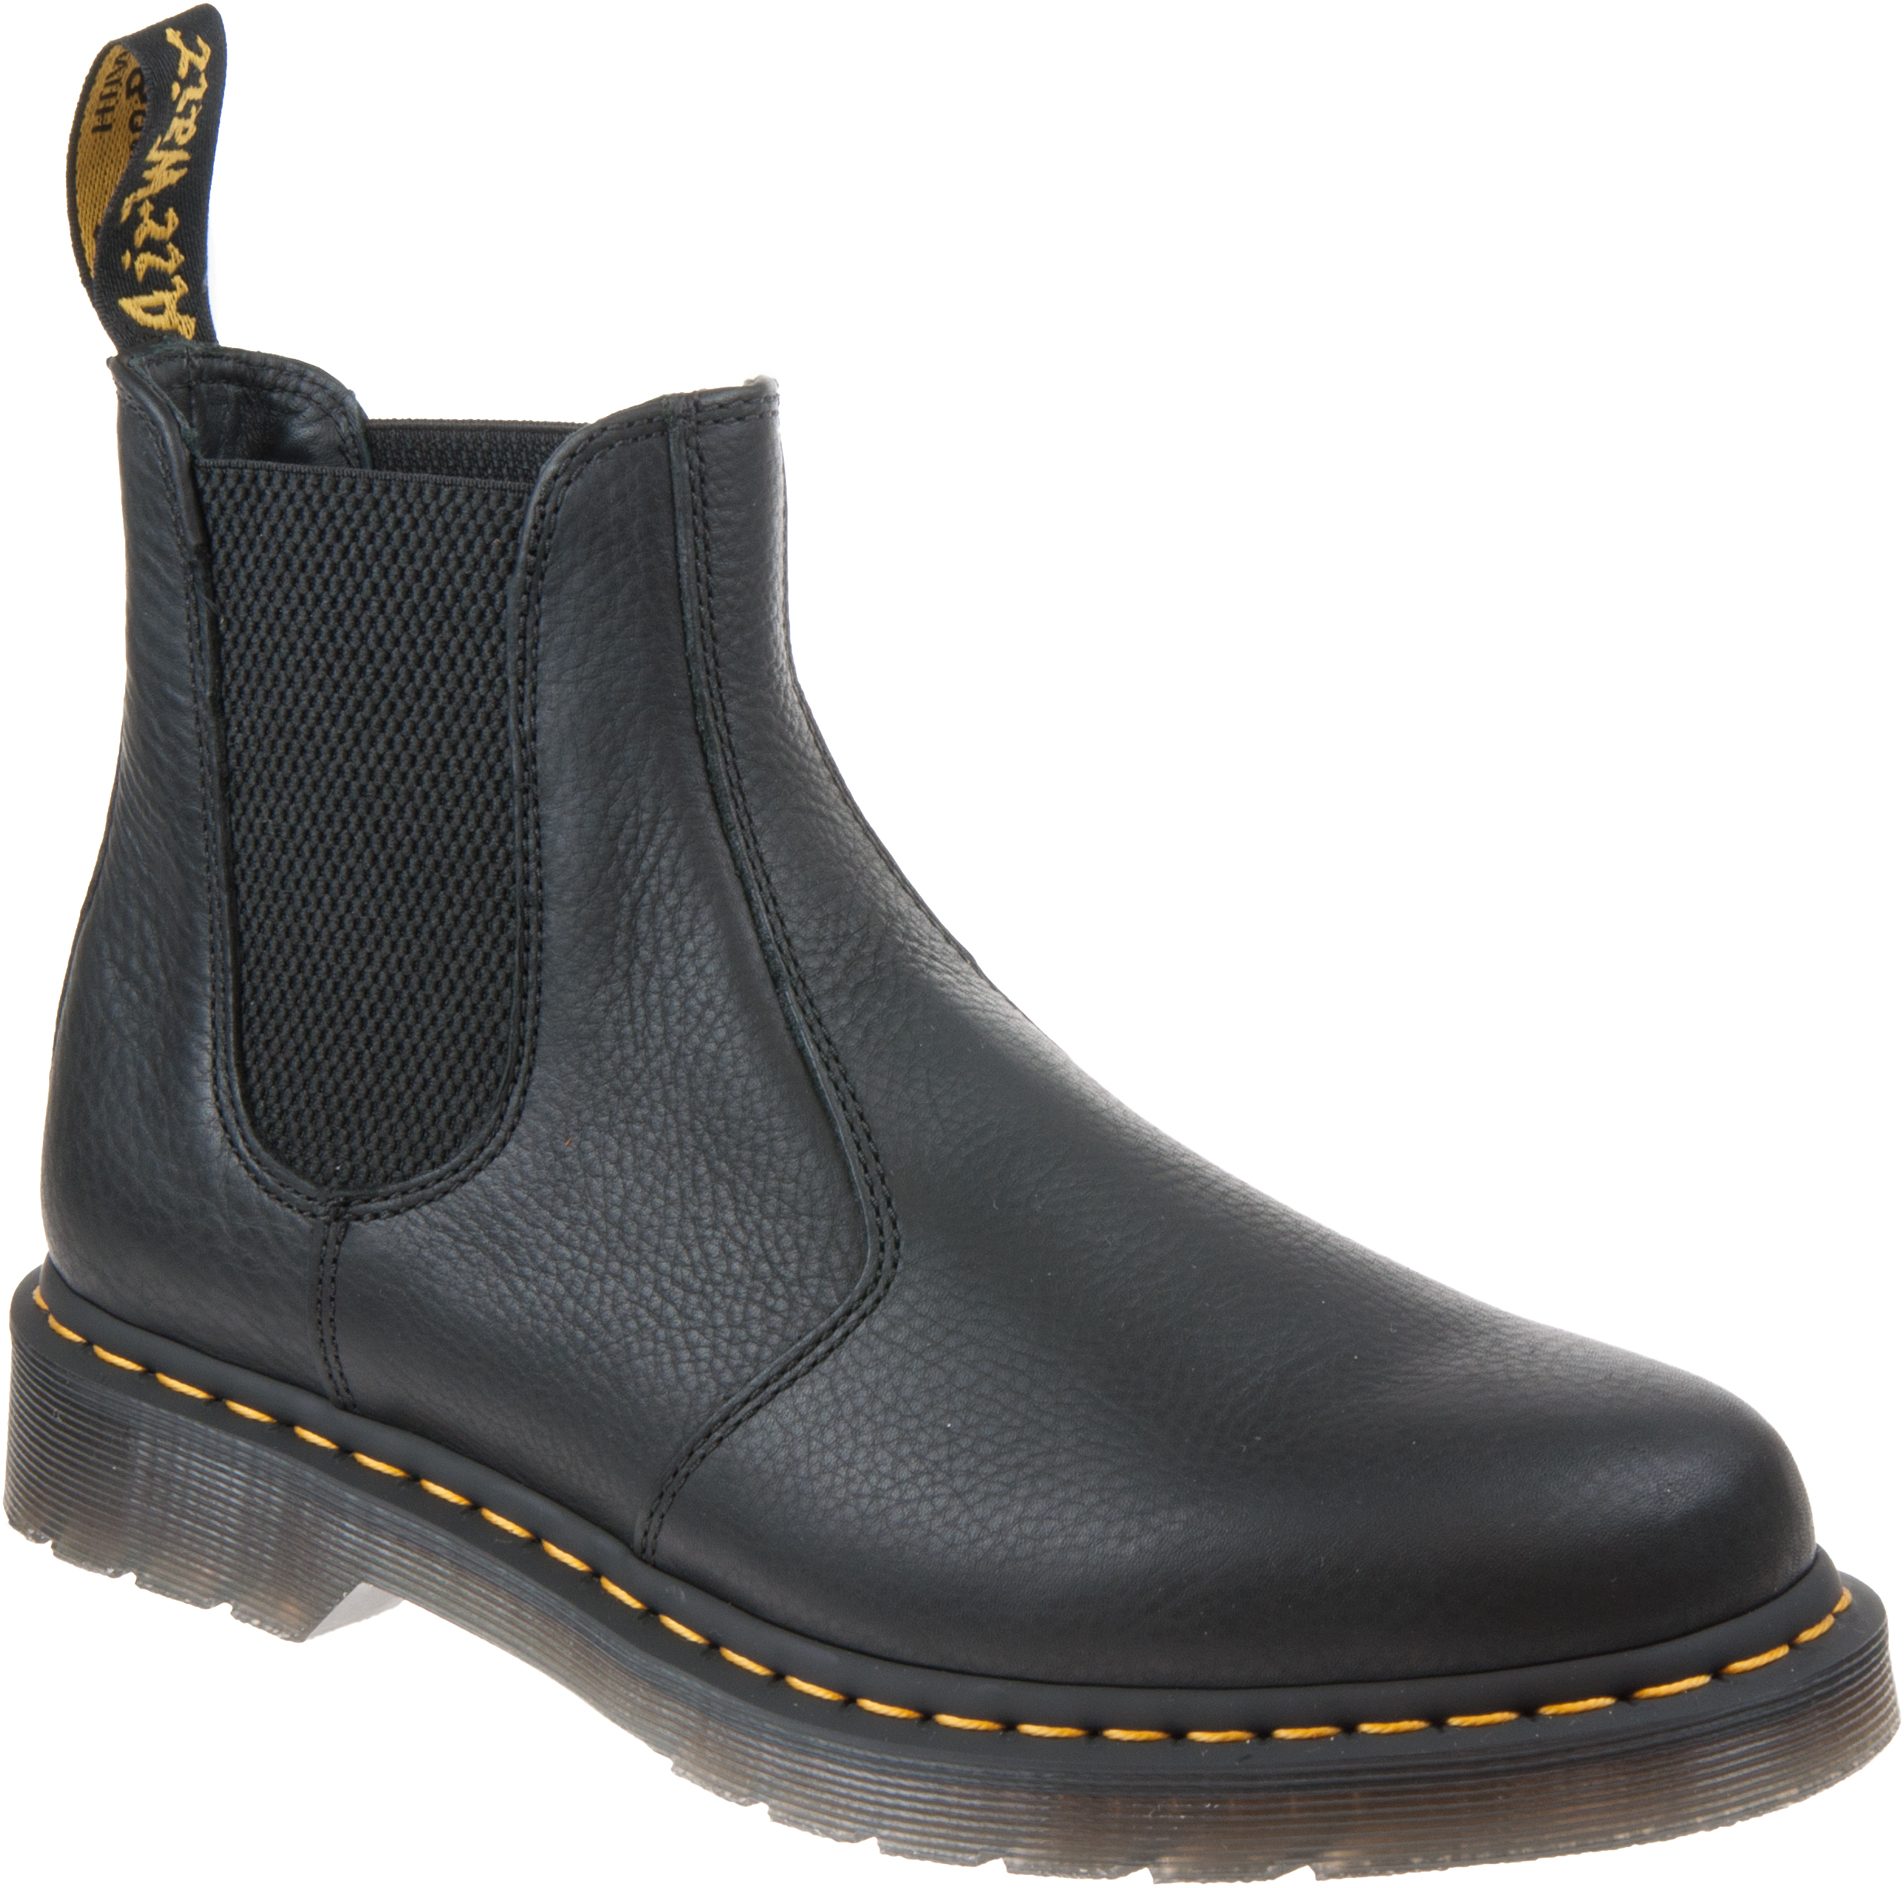 Dr. Martens 2976 Chelsea Boot Black Ambassador 25600001 - Casual Boots ...